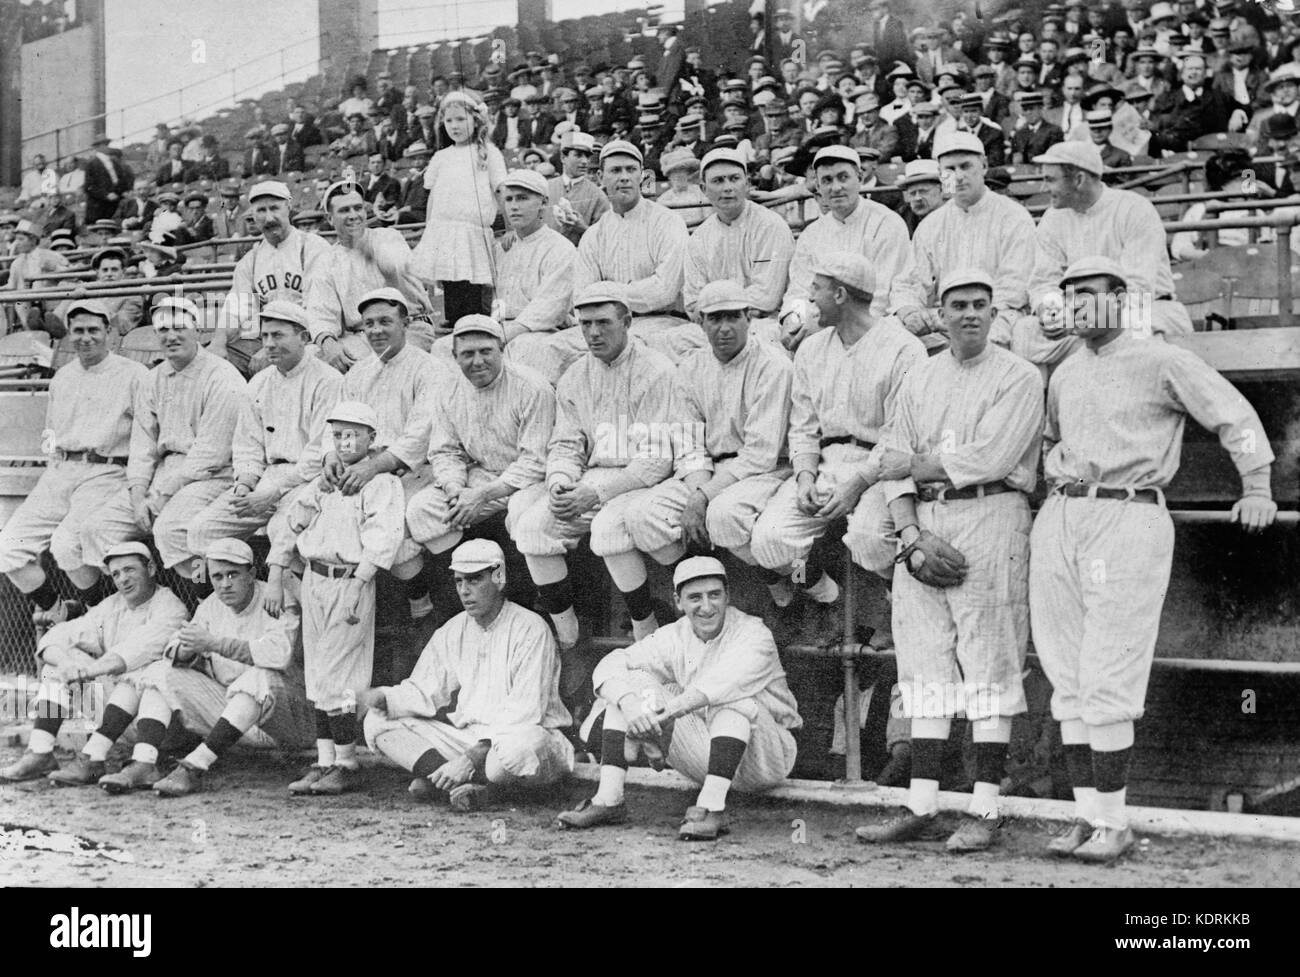 Red Sox de Boston photo de l'équipe à la série mondiale 1912 Banque D'Images